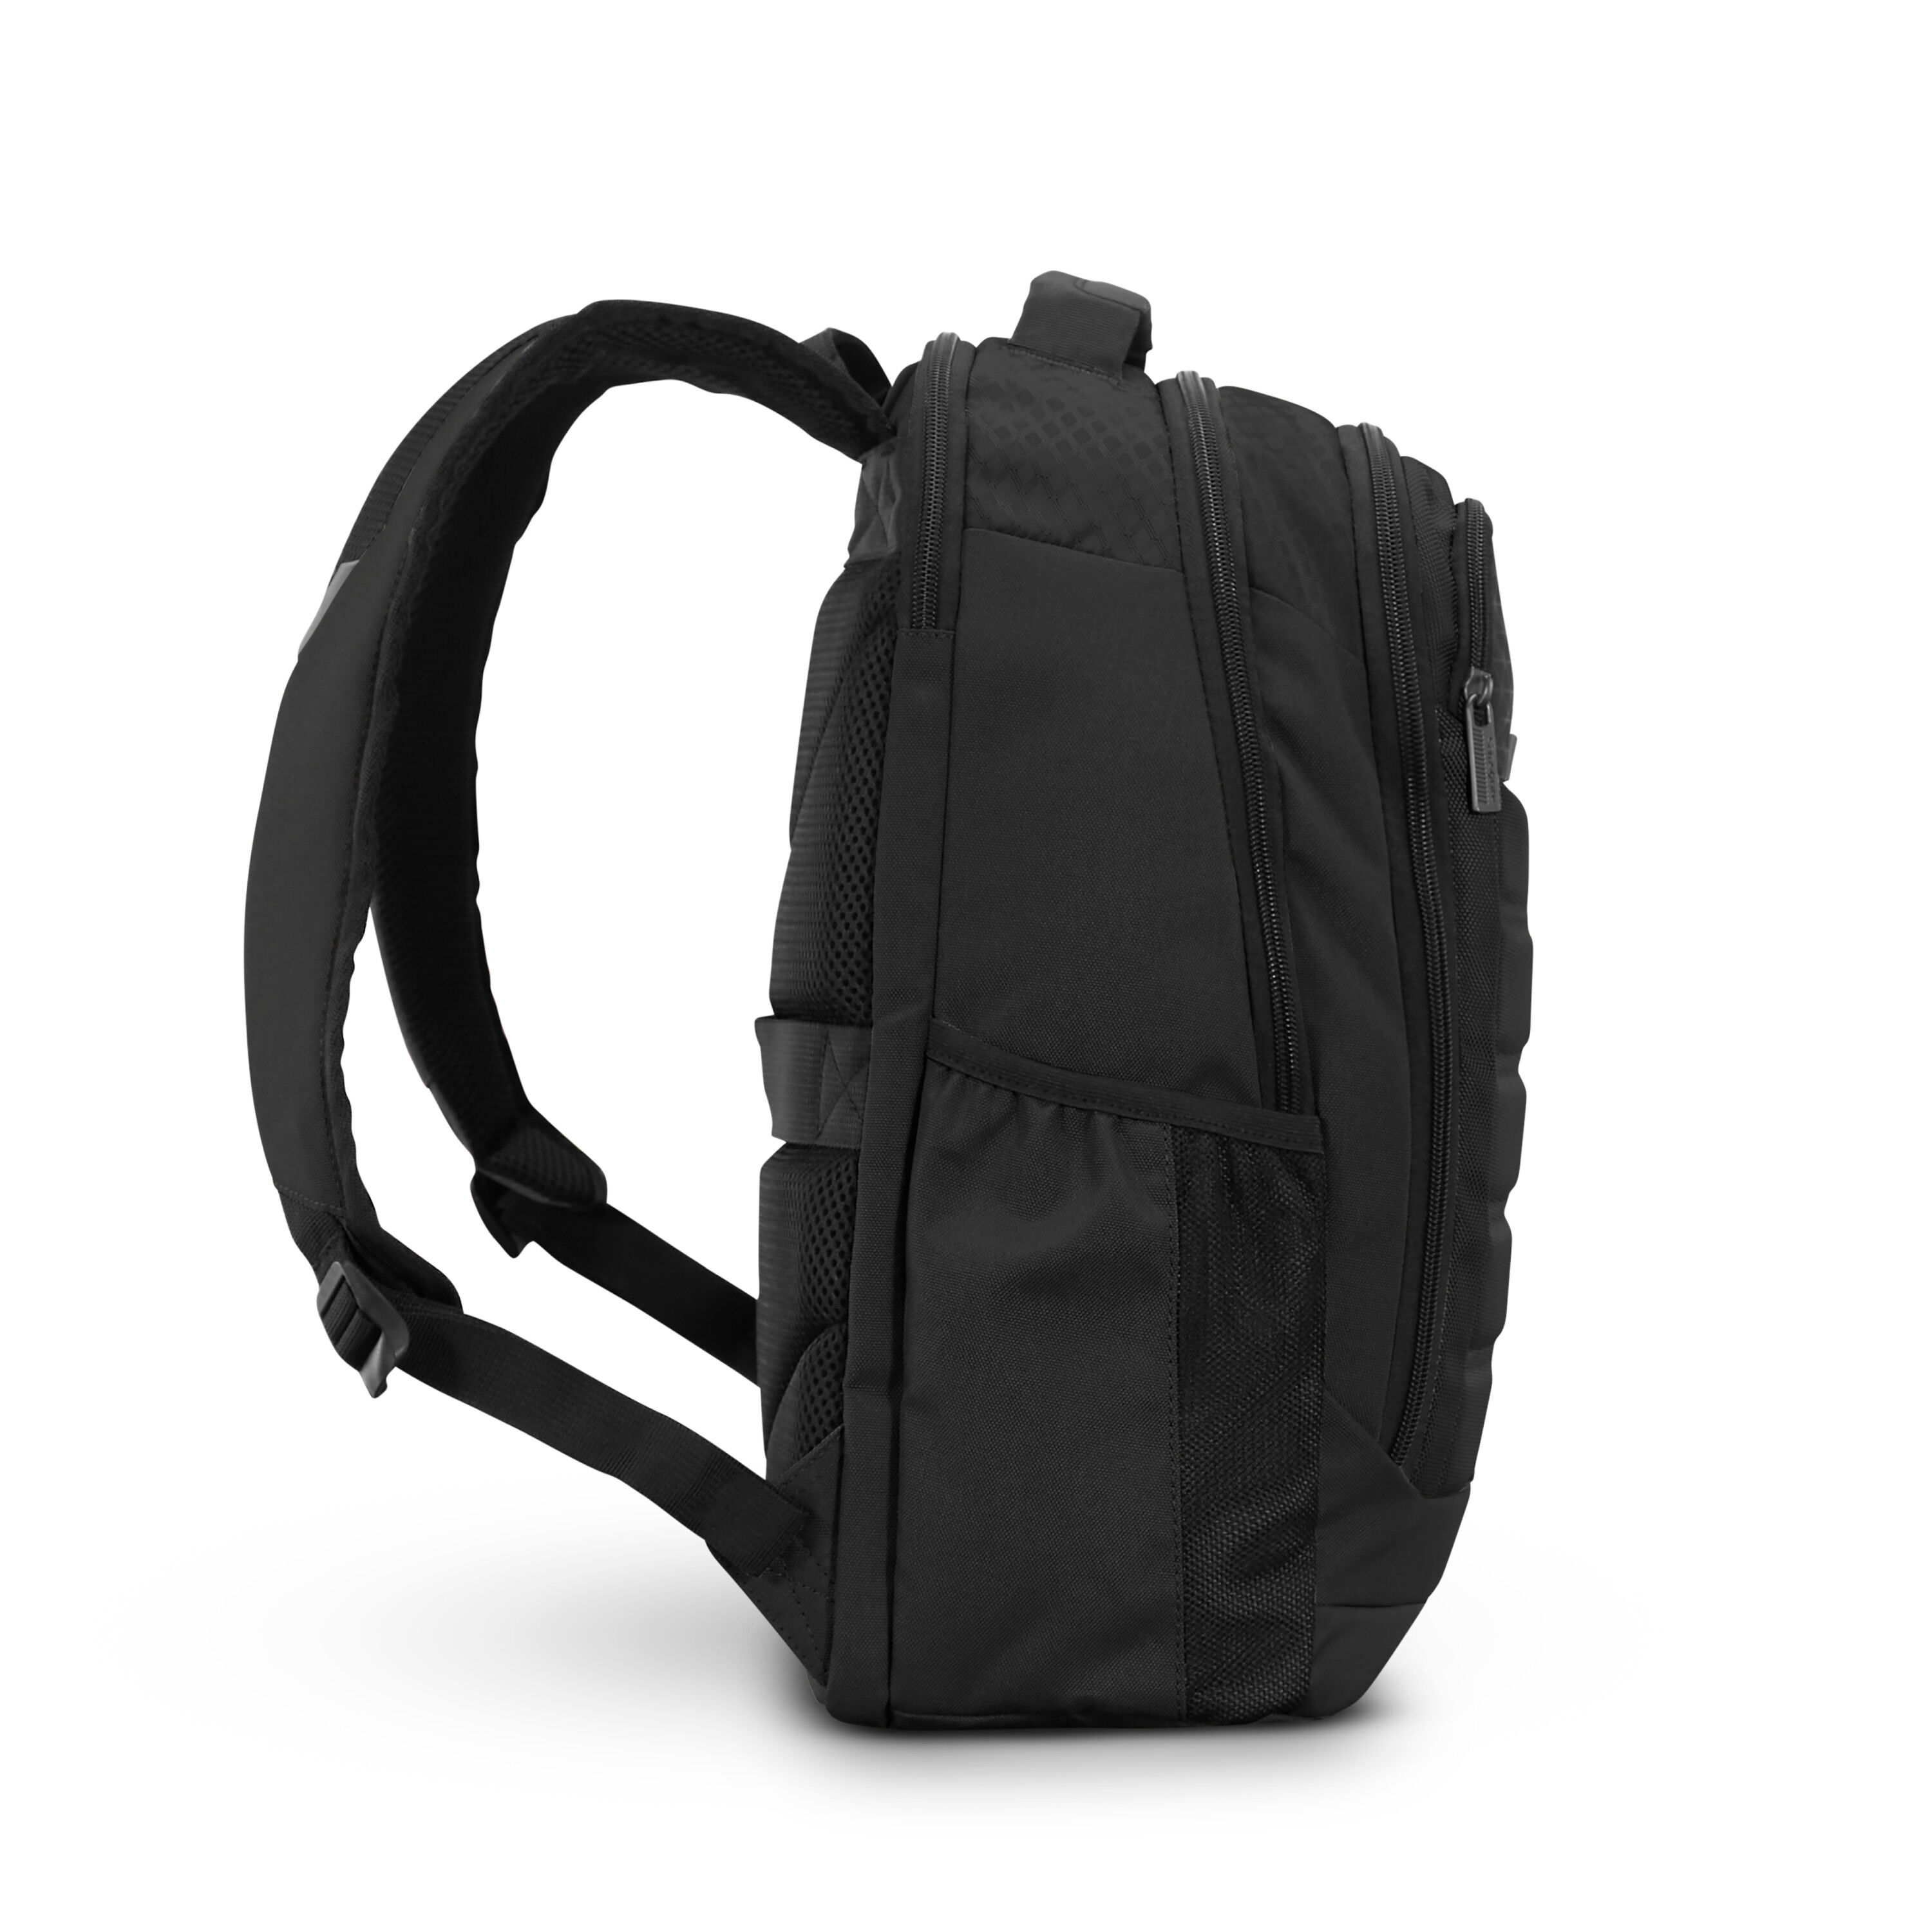 Buy Carrier GSD Backpack for USD 71.99 | Samsonite US